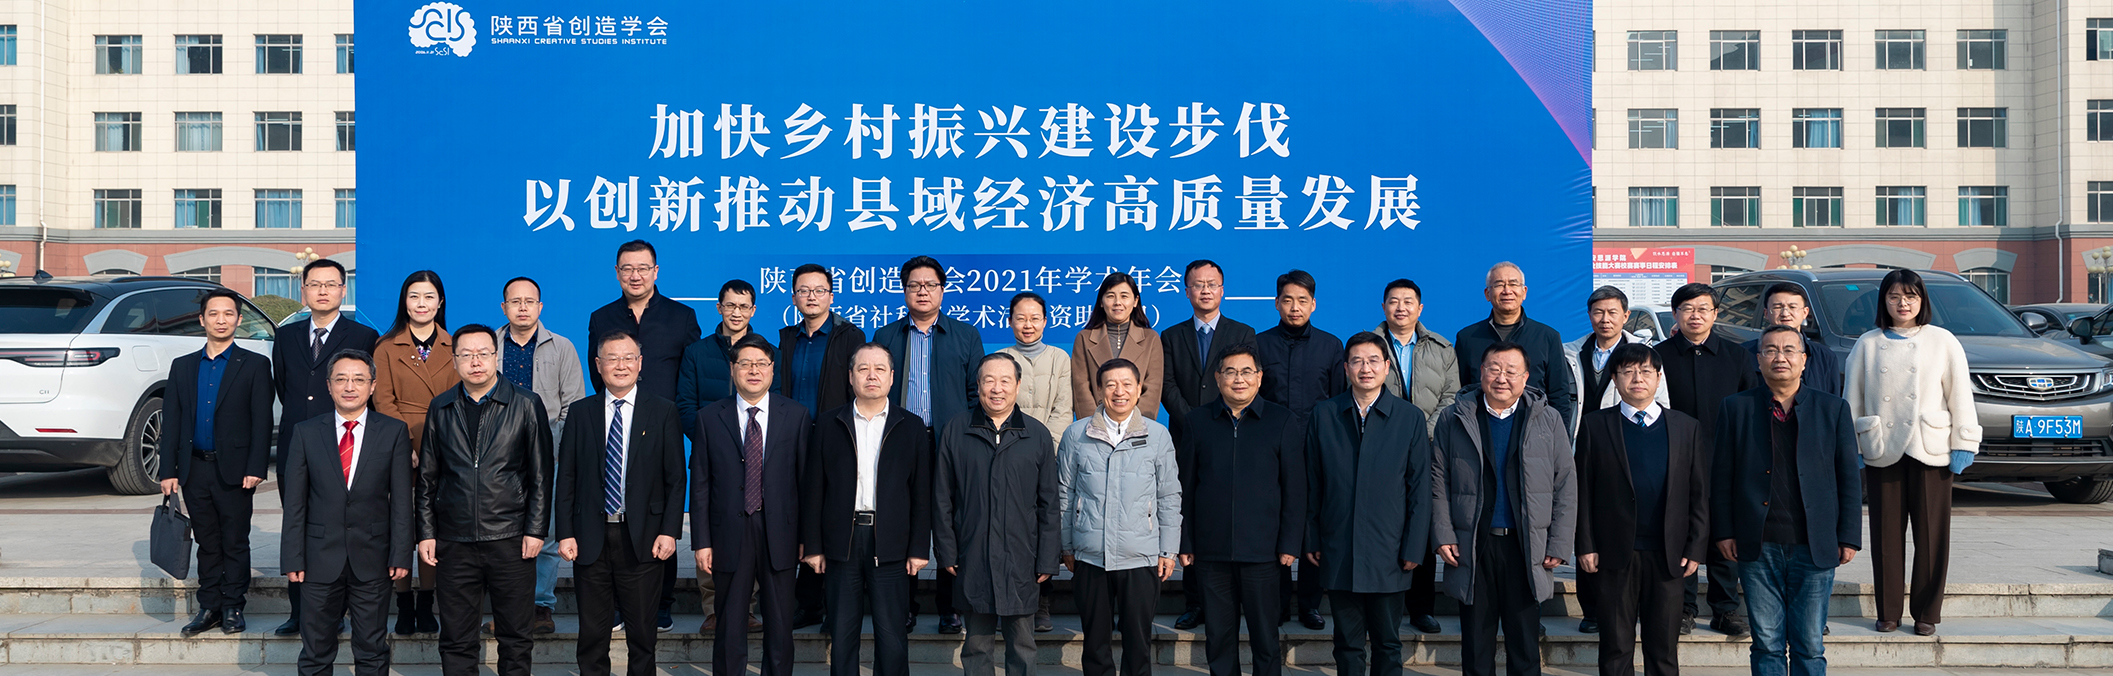 陕西省创造学会2021年学术年会暨县域经济专业委员会成立大会与会代表留影